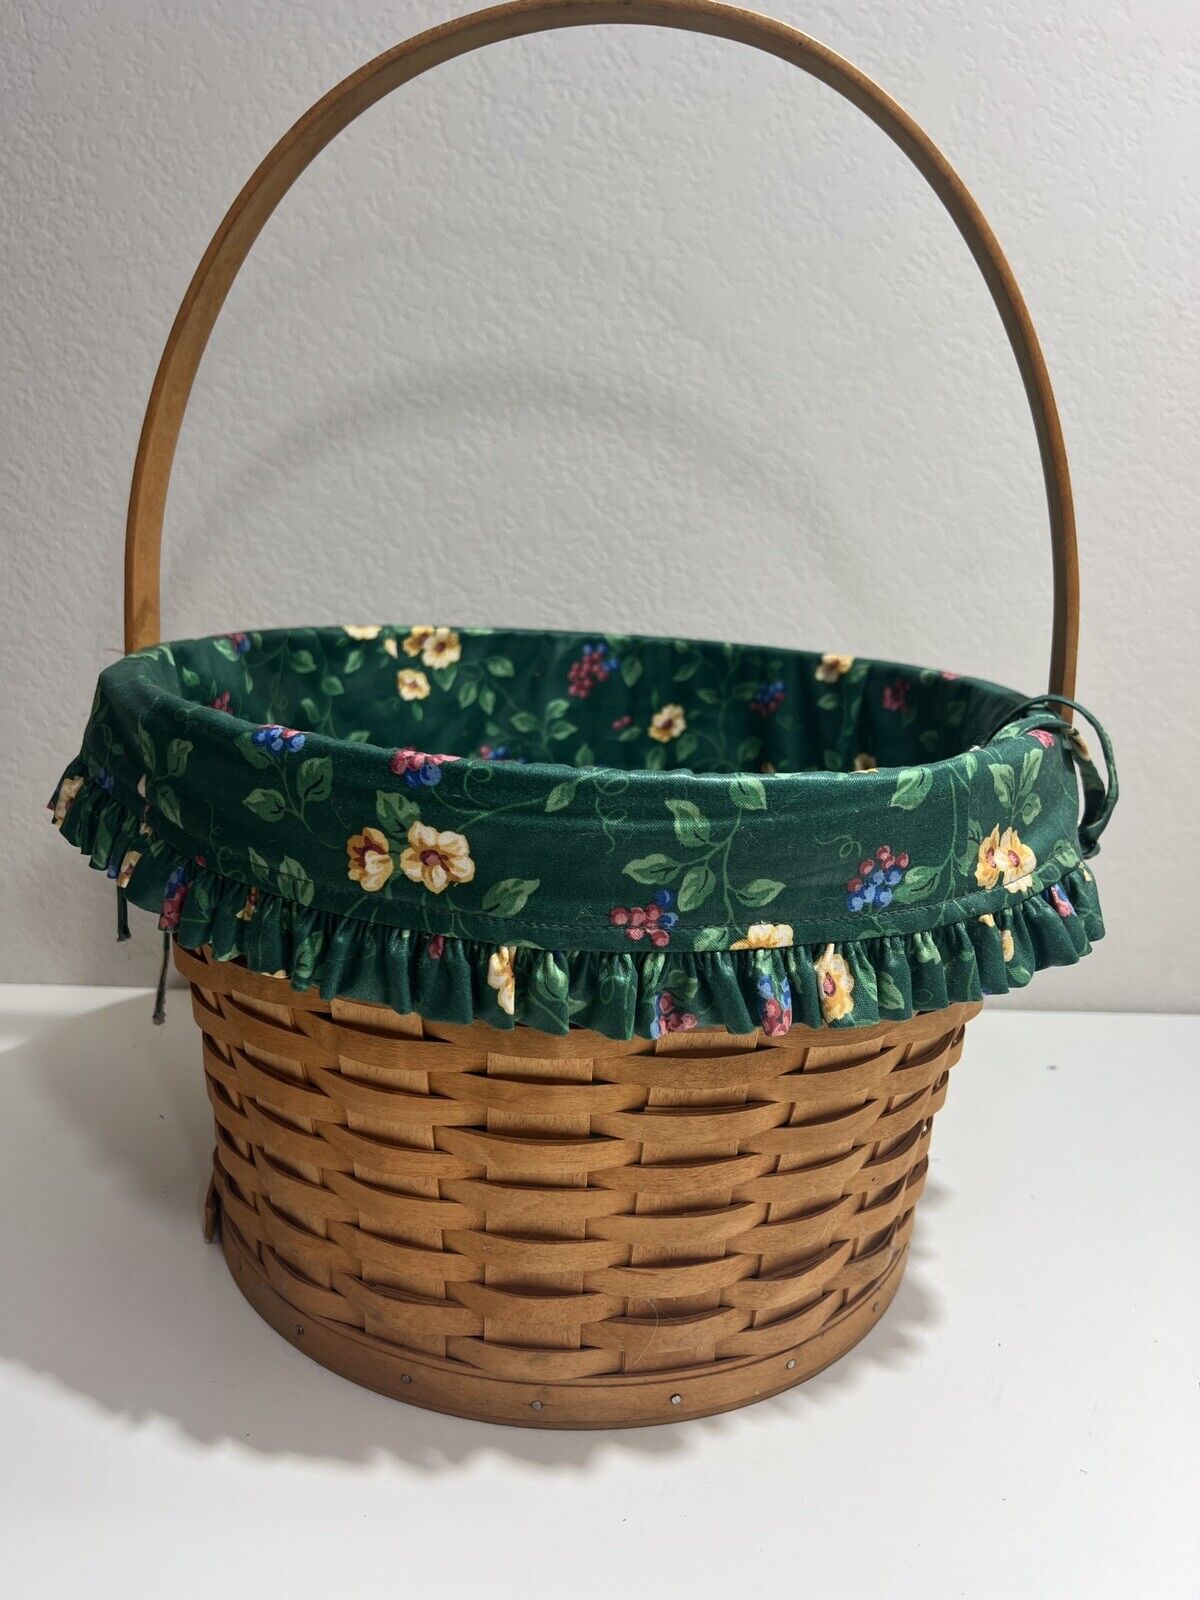 Longaberger Basket Round Liner Green Floral 1996 Vintage Retired Large Handle